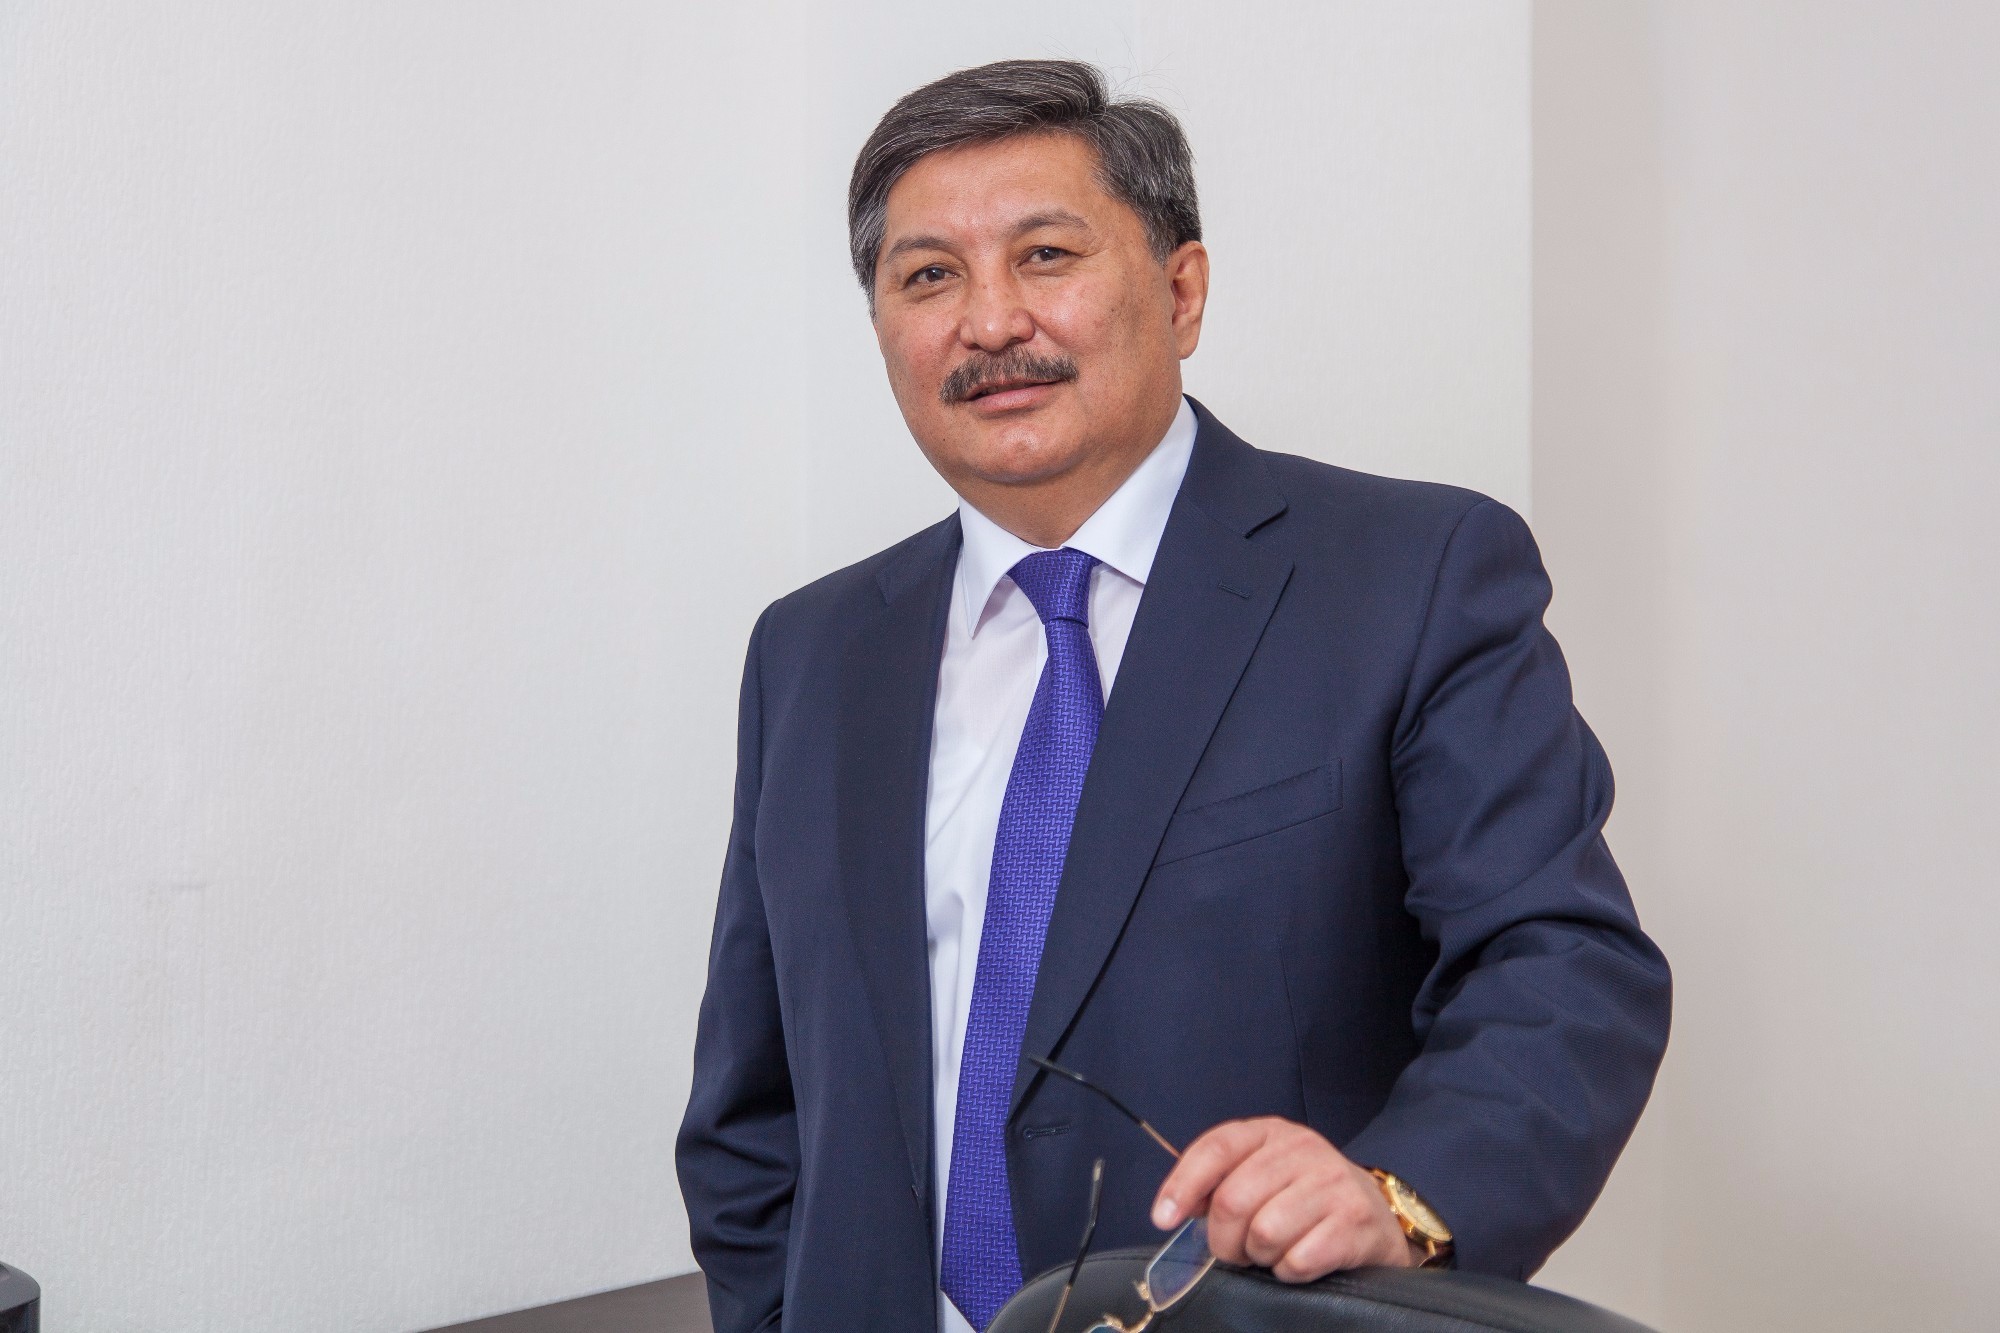 Назначен руководитель Управления общественного здоровья города Алматы